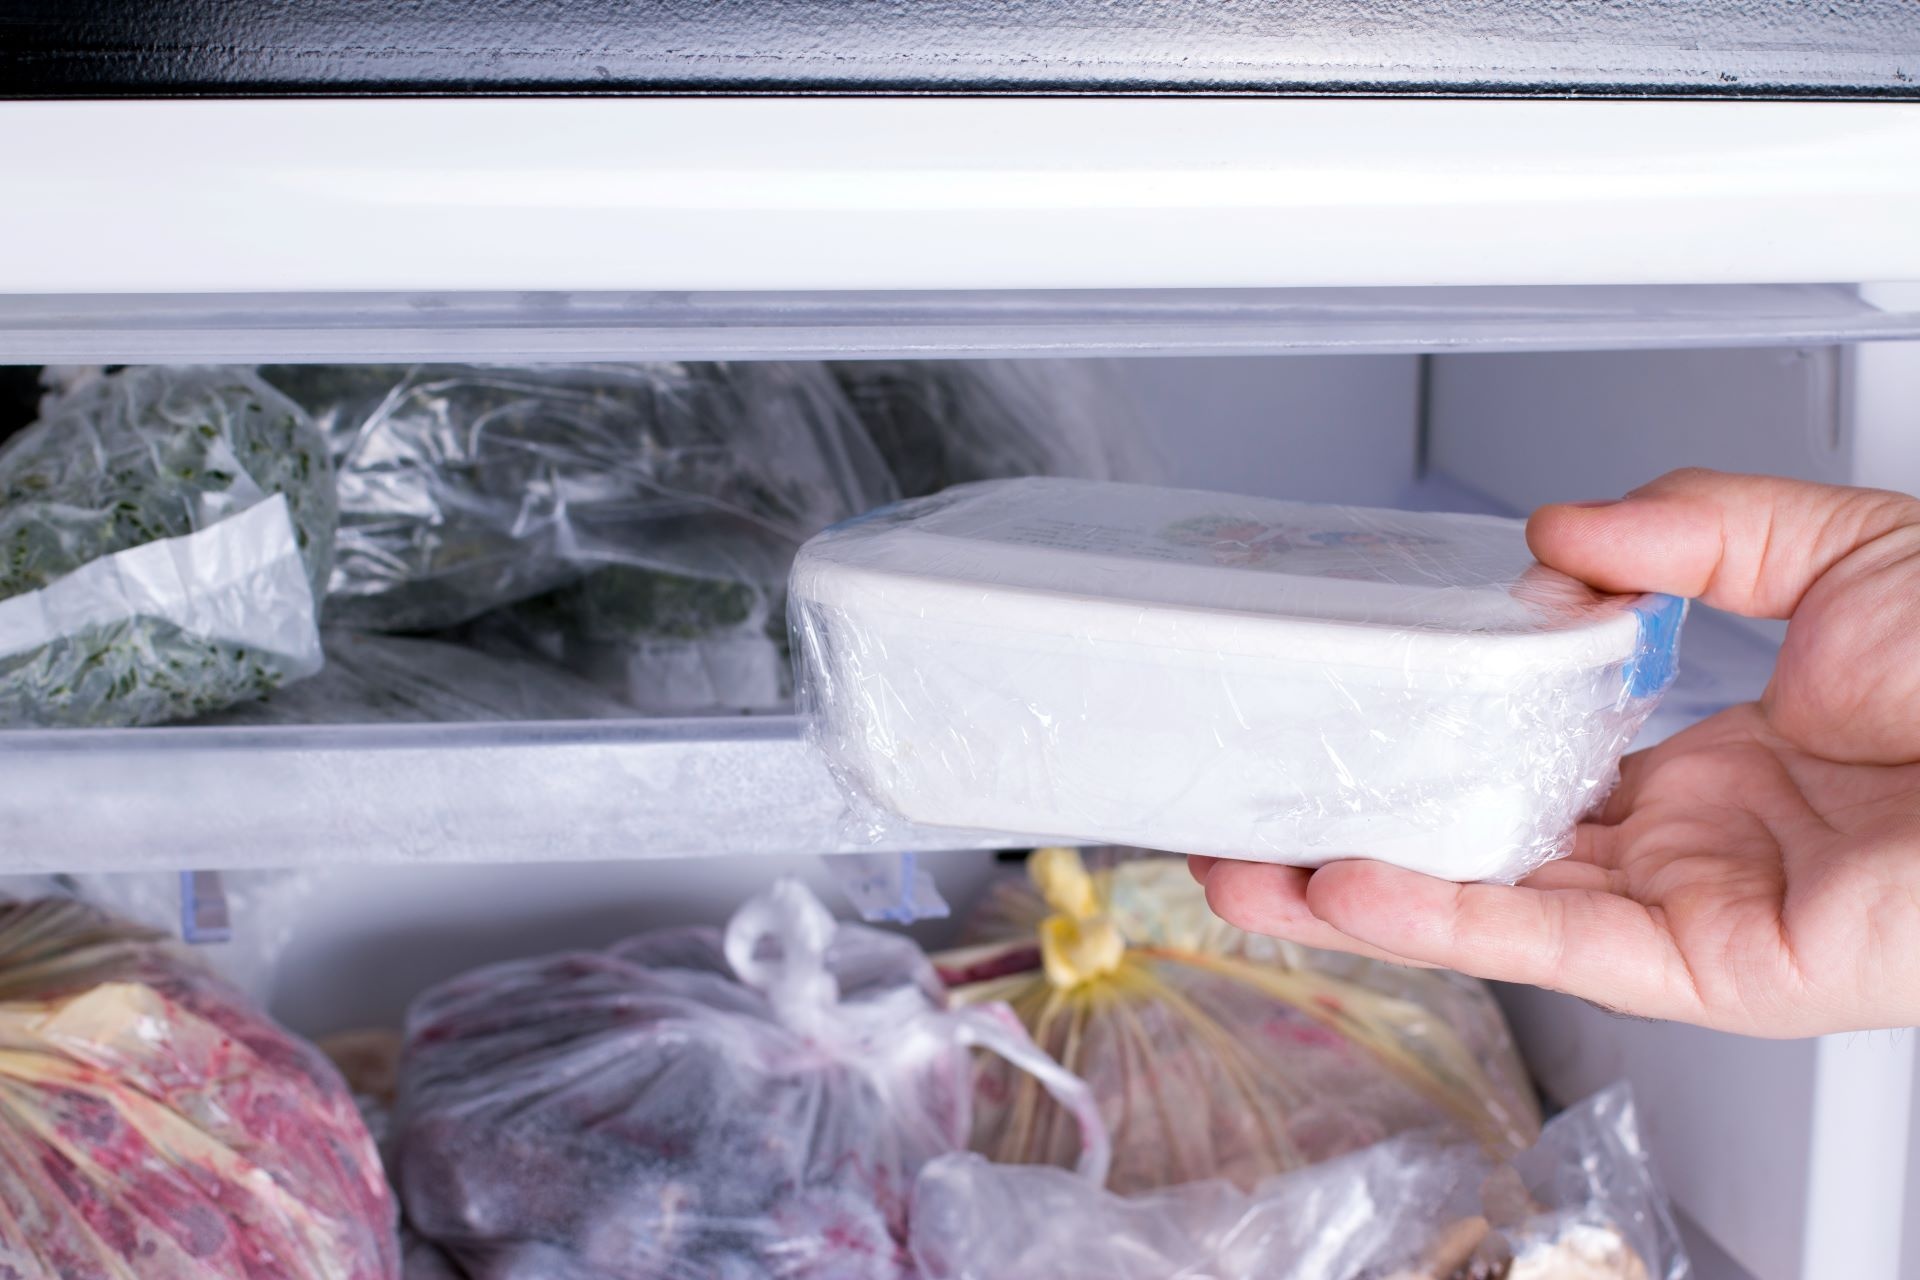 Лечение заморозкой. Хранение в морозилке. Заморозка в морозильник. Хранение замороженных продуктов в морозилке. Торт в морозилке.